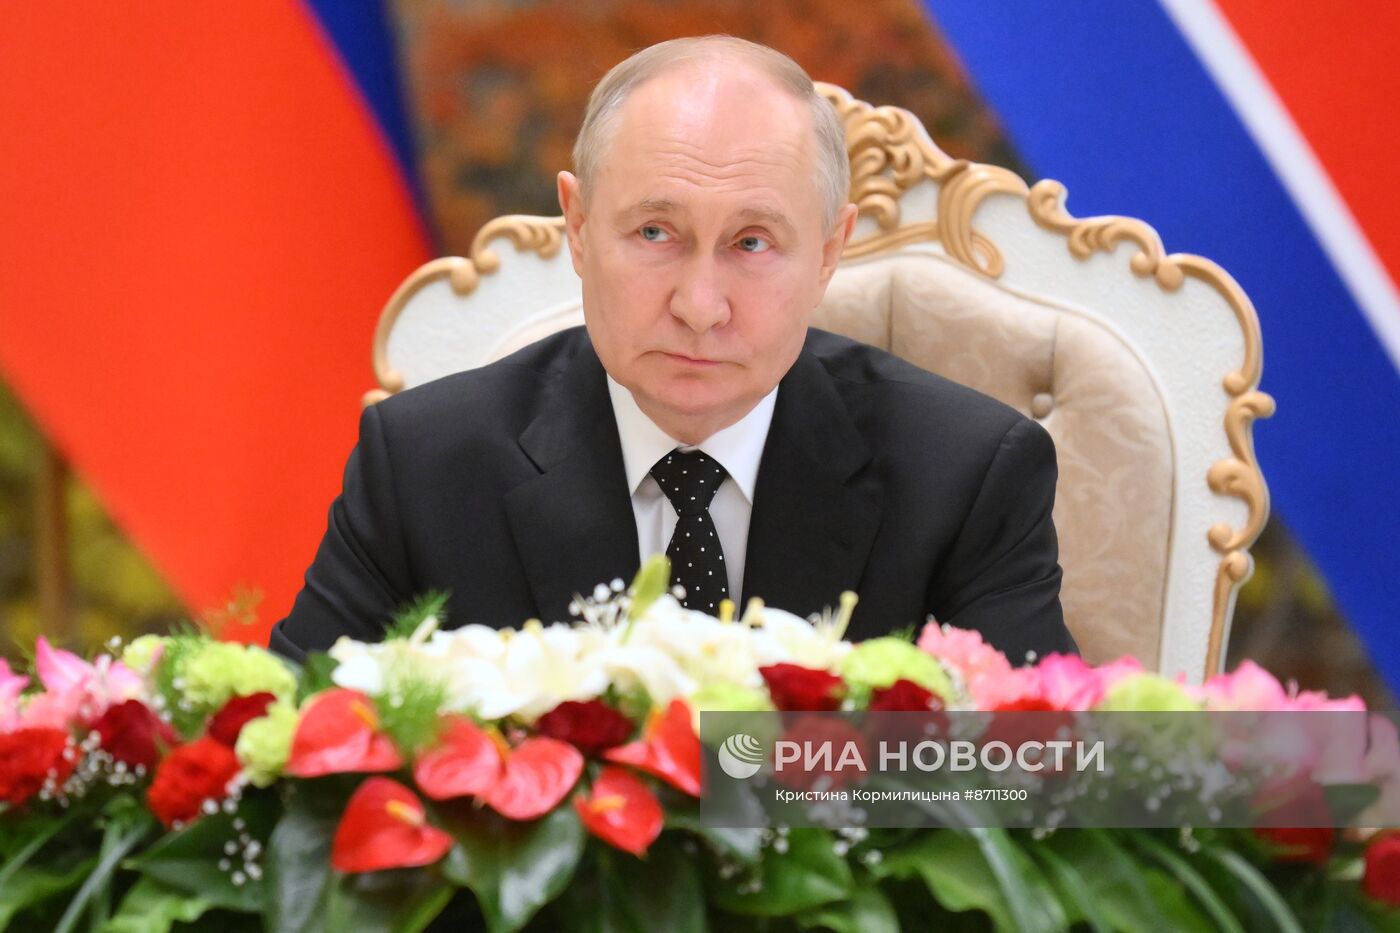 Дружественный государственный визит президента Владимира Путина в КНДР